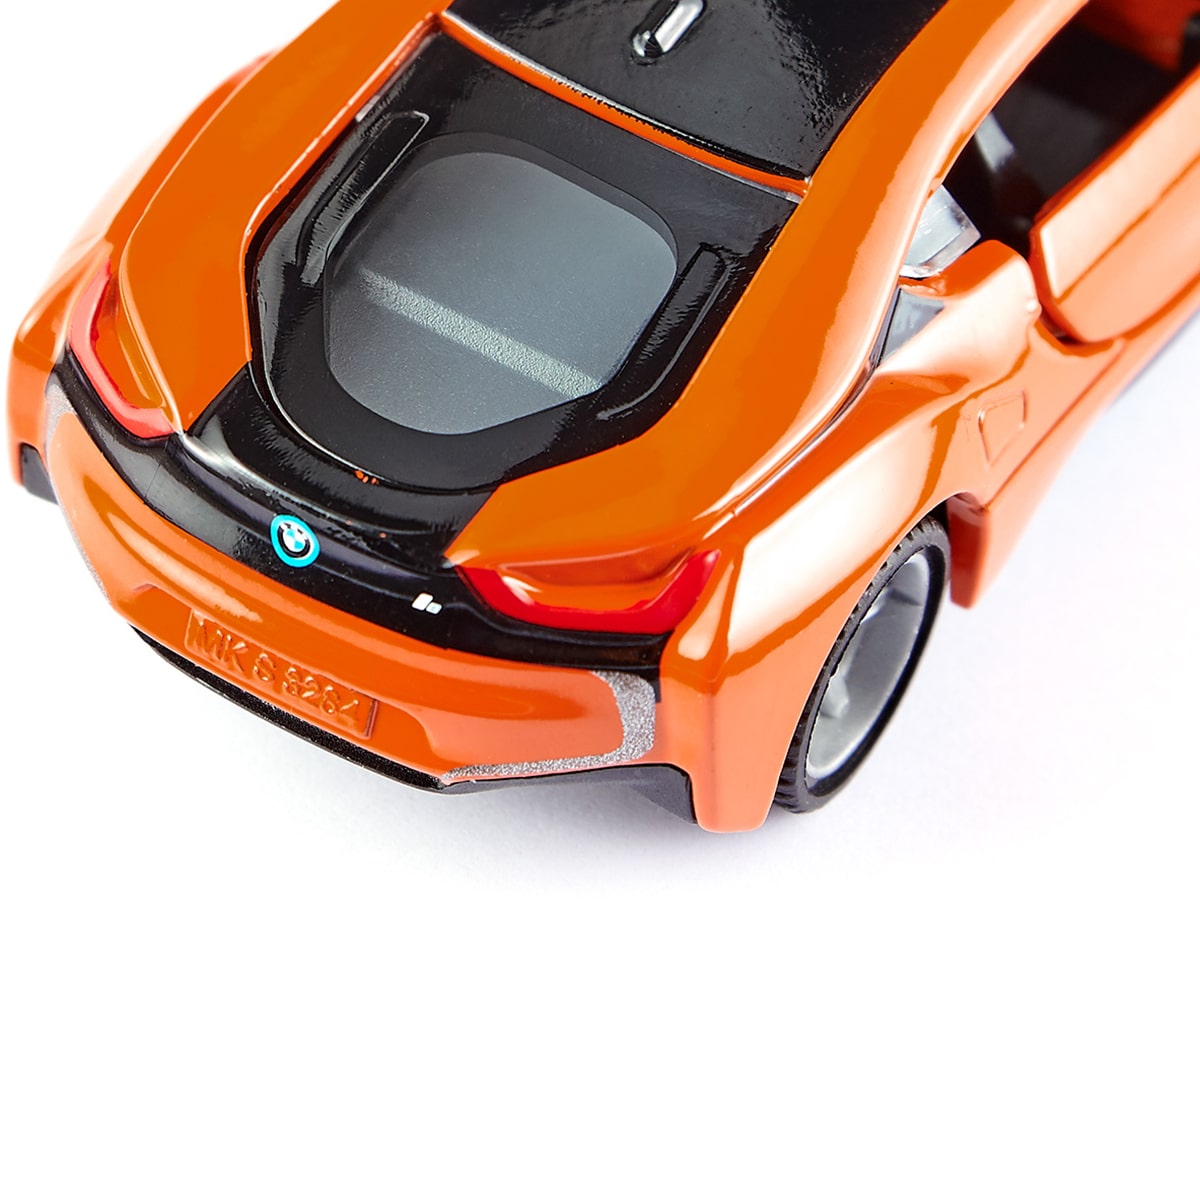 BMW i8 LCI (ジク・SIKU): ボーネルンド オンラインショップ。世界中の知育玩具など、あそび道具がたくさん。0歳 からのお子様へのプレゼントにも。